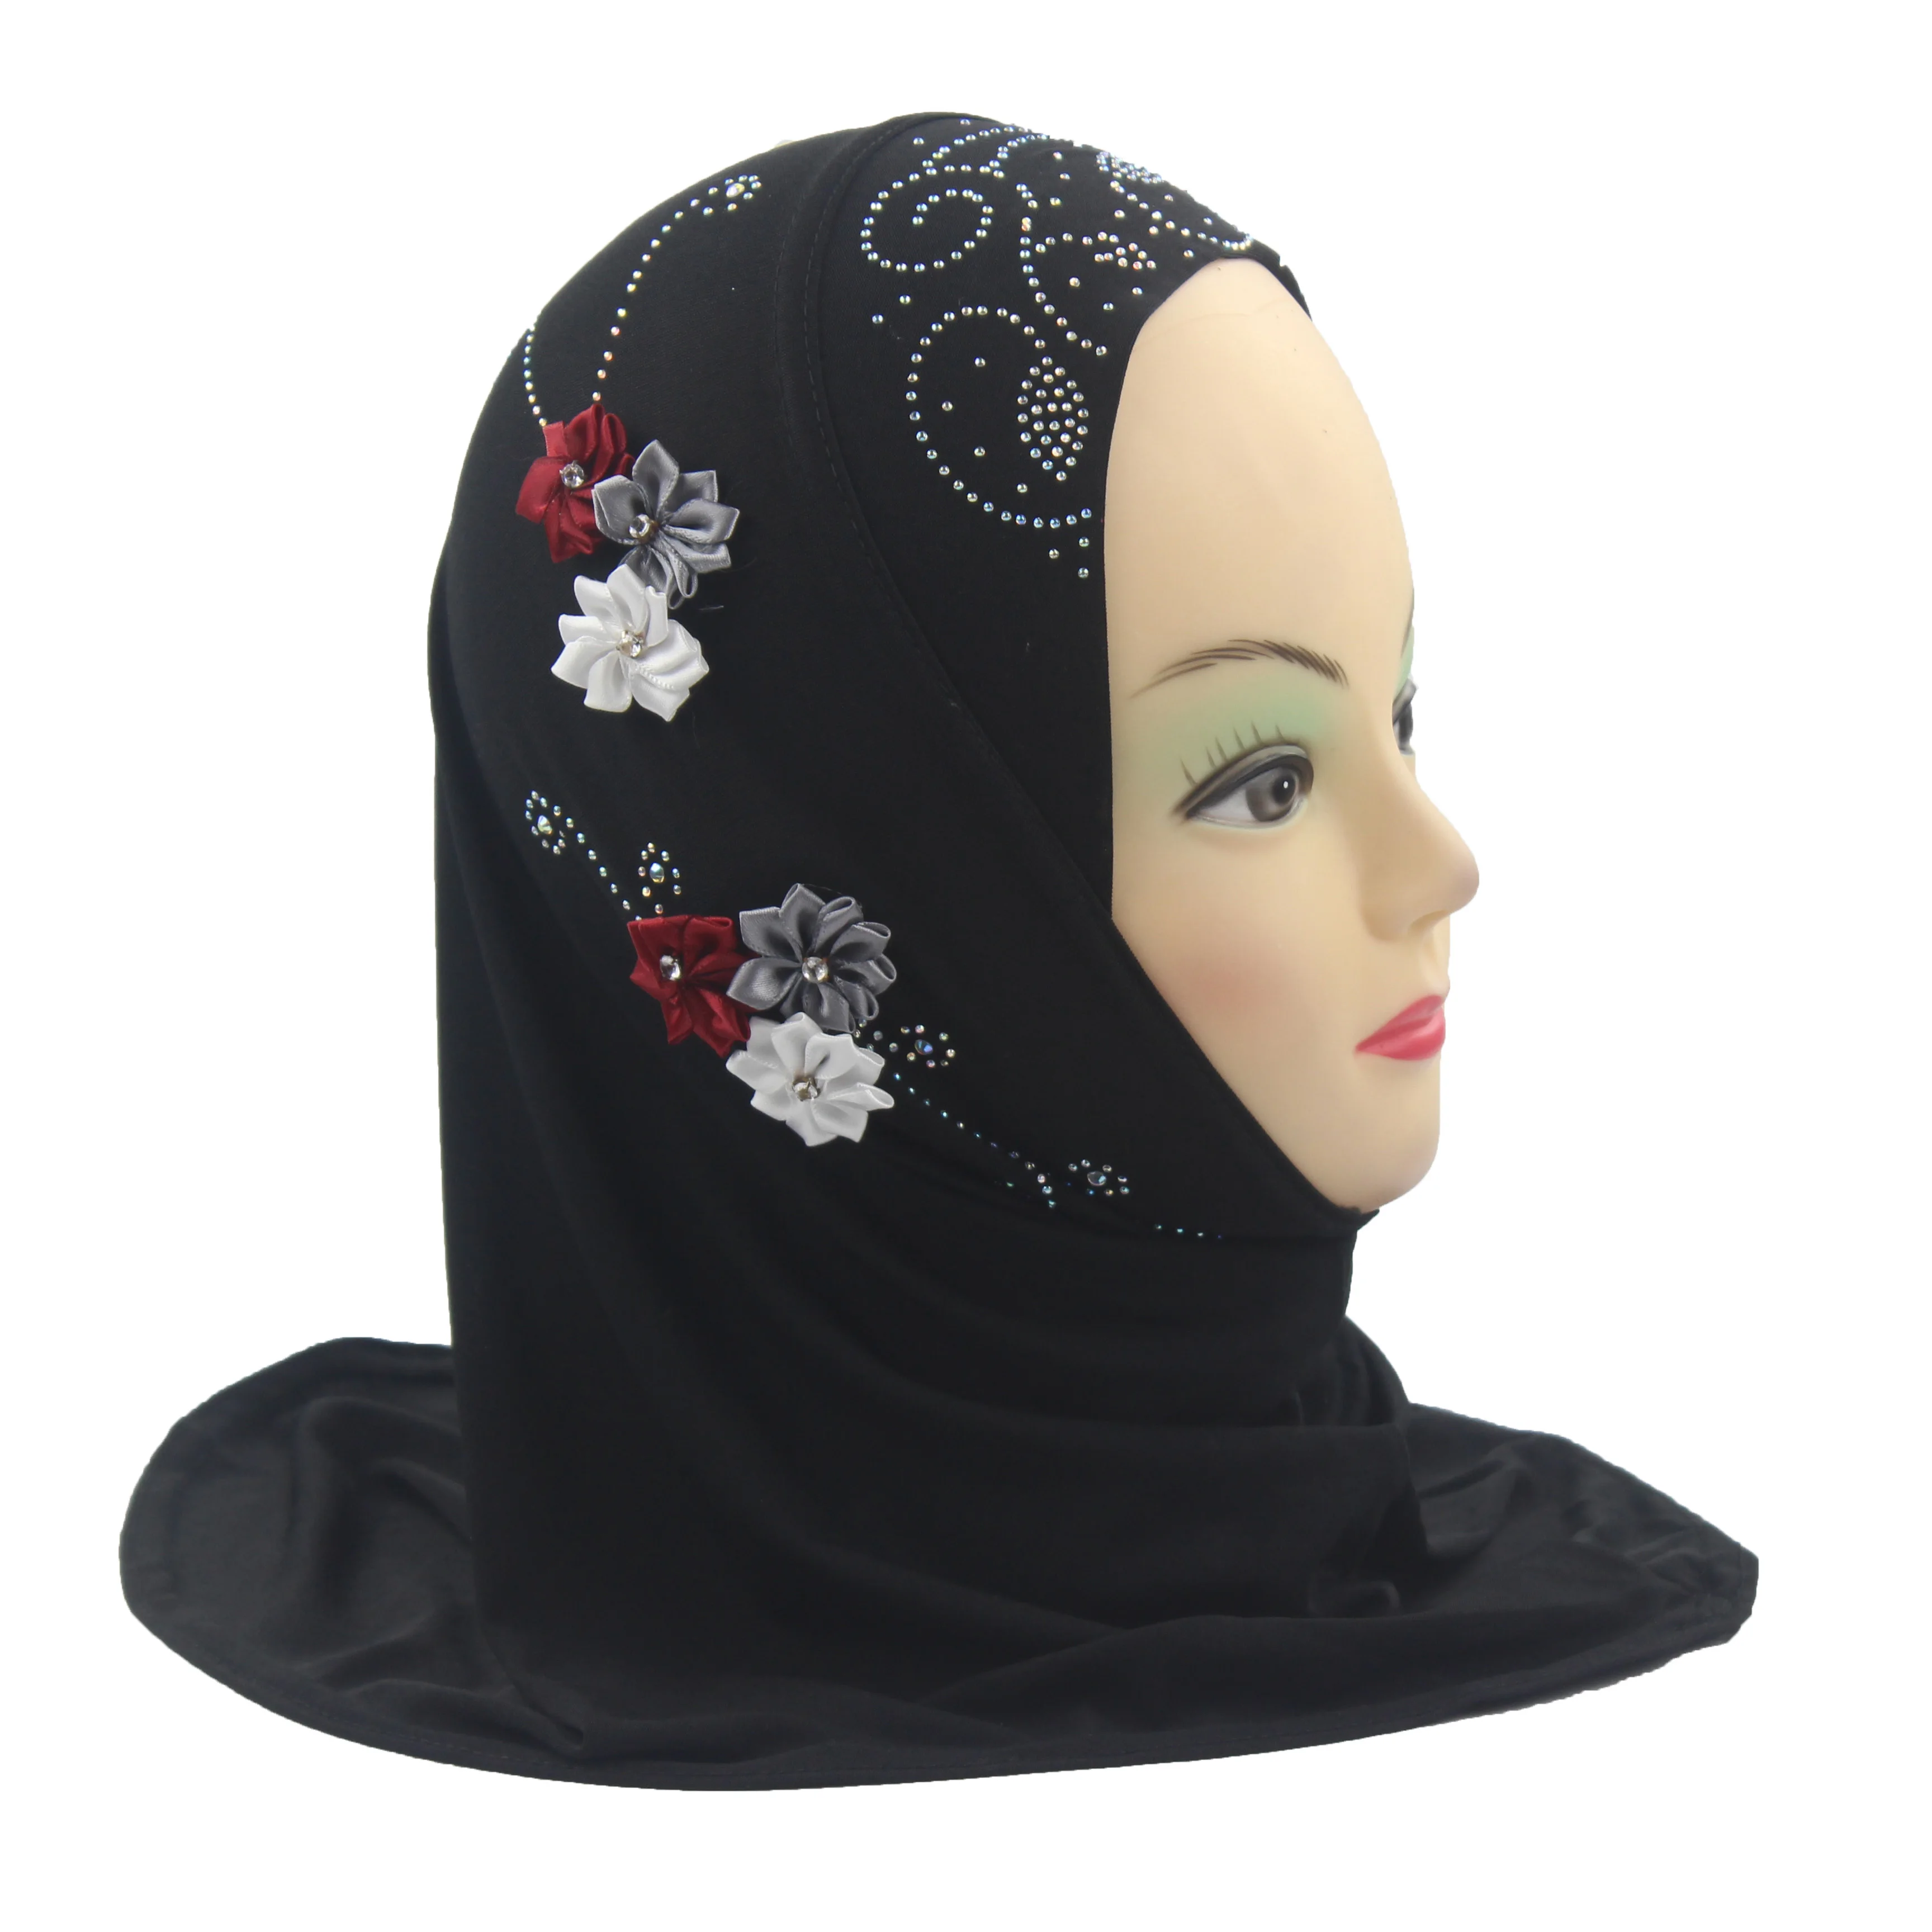 Мусульманский хиджаб шарф хиджаб для девочки шарф на голову повязка на голову с цветами хиджаб для девочек От 1 до 5 лет - Цвет: Black